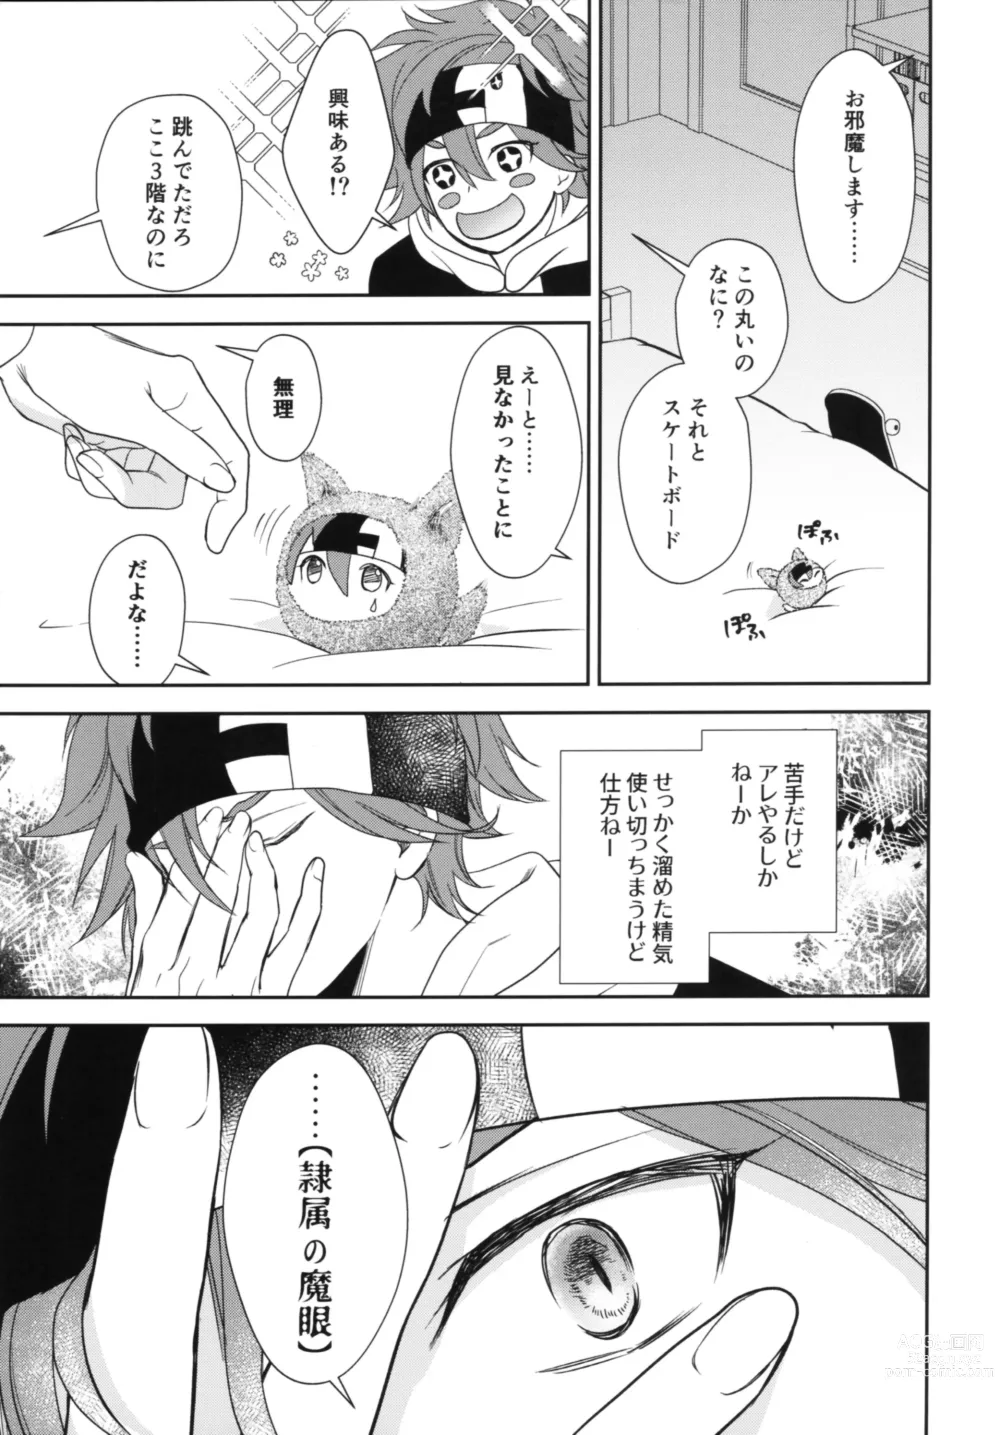 Page 6 of doujinshi Vampiro